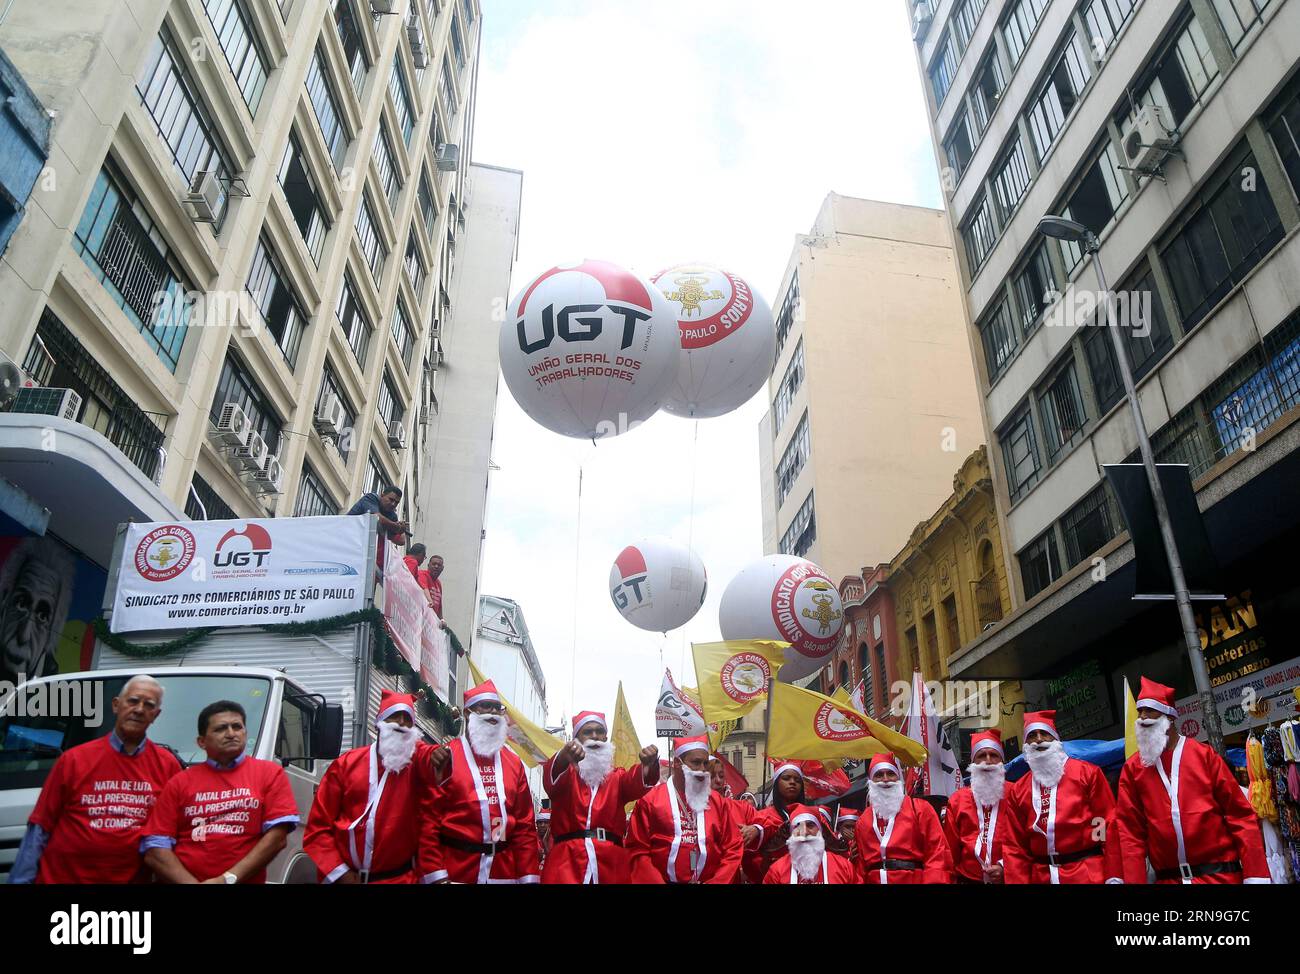 (151204) -- SAO PAULO, 4. Dezember 2015 -- Demonstranten in Weihnachtsmannkostümen protestieren gegen die Arbeitslosigkeit während einer Demonstration namens Christmas Fight for Conservation of Employees in the Trade in Sao Paulo, Brasilien, 4. Dezember 2015. Laut der lokalen Presse wurde der Protest von der Gewerkschaft organisiert, um gegen die Arbeitslosigkeit in diesem Sektor zu protestieren, die durch die Rezession und den Rückgang der Wirtschaftstätigkeit verursacht wurde. Rahel Patrasso) (jg) (fnc) BRASILIEN-SAO PAULO-SOCIETY-PROTEST e RahelxPatrasso PUBLICATIONxNOTxINxCHN 151204 Sao Paulo DEZ 4 2015 Demonstrantin in Kostümen des Santa Claus Prote Stockfoto